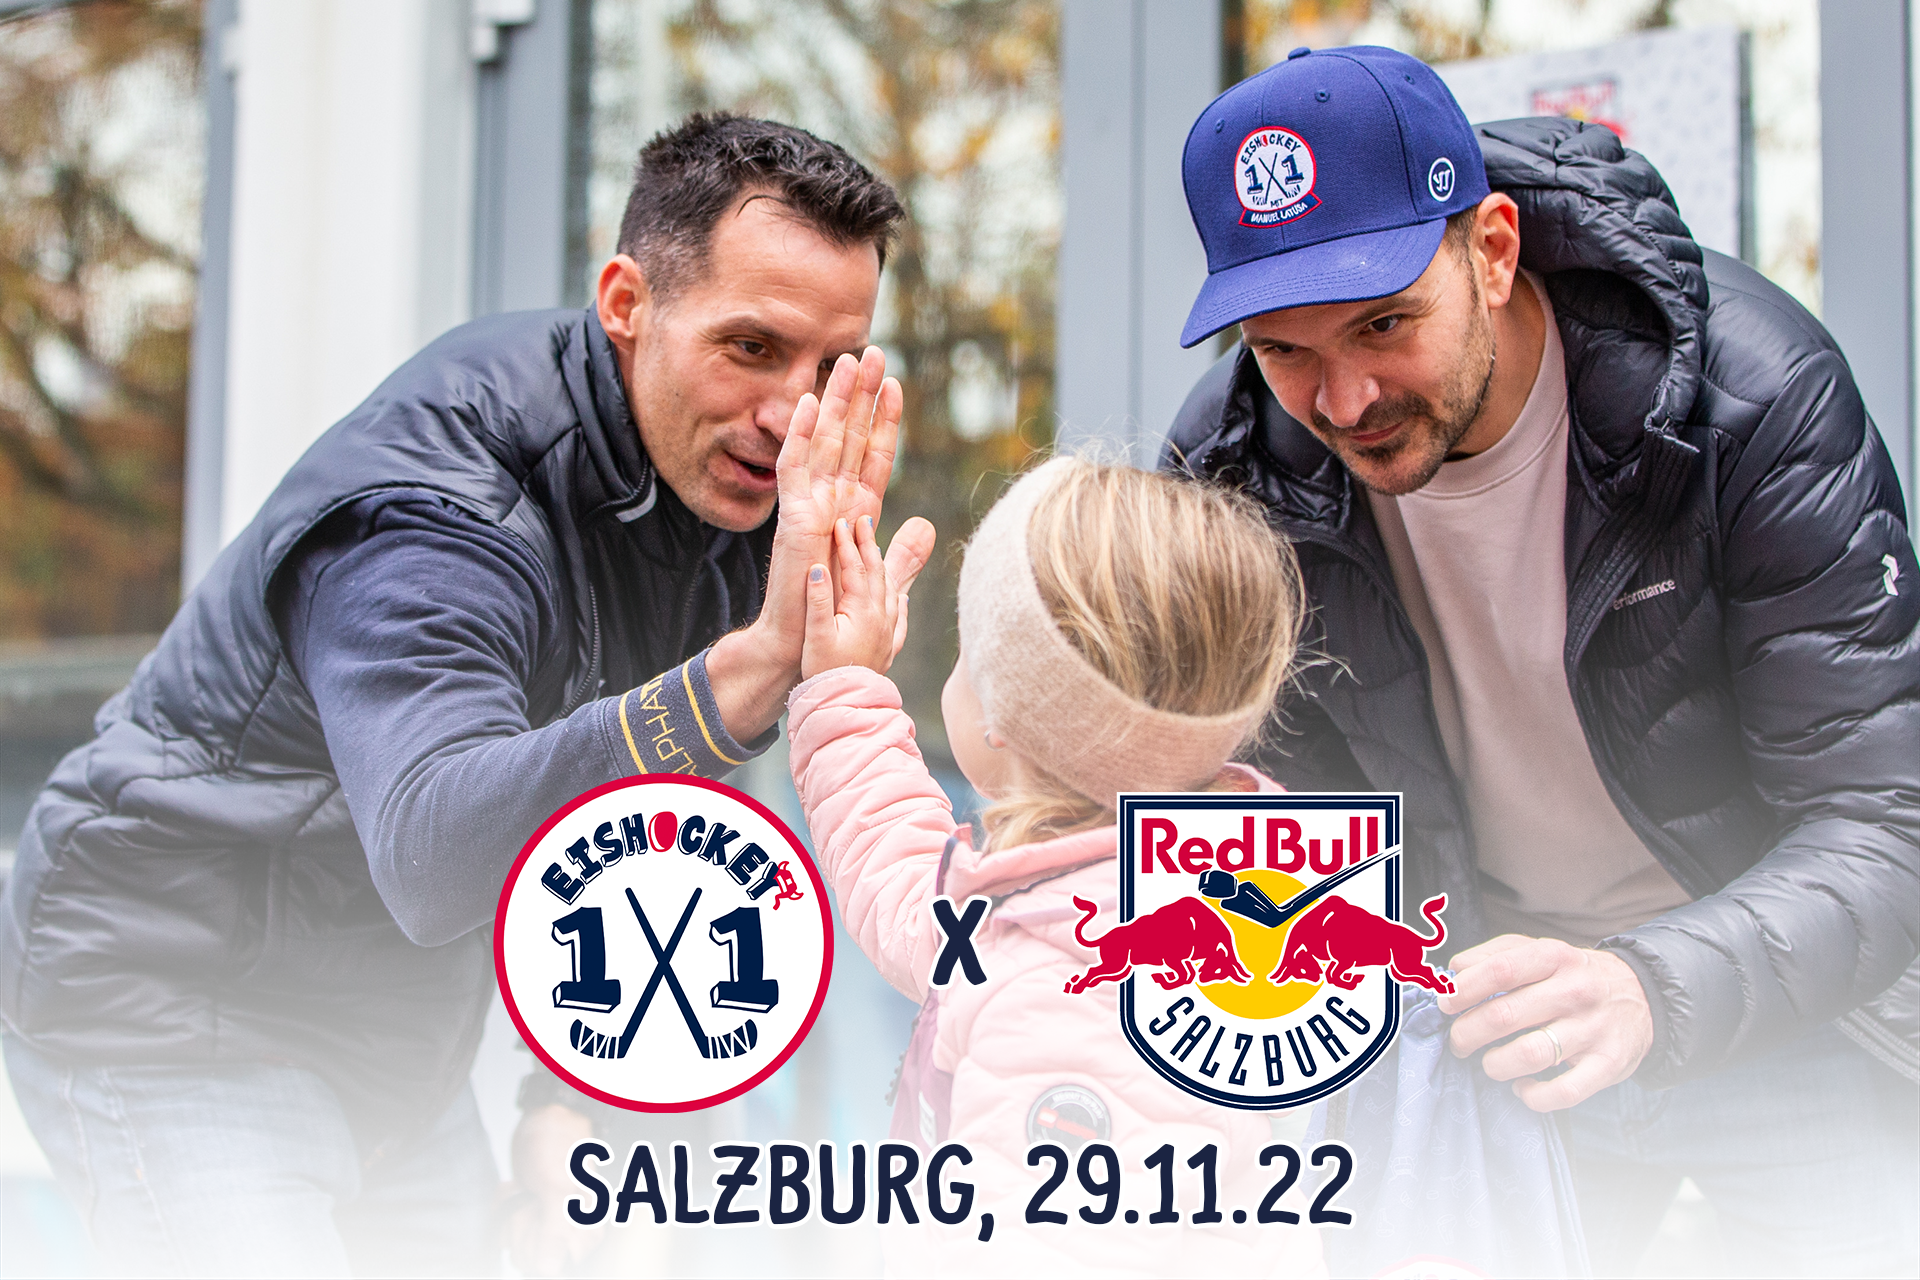 Zweiter Stop fixiert: Das Eishockey 1×1 kommt nach Salzburg